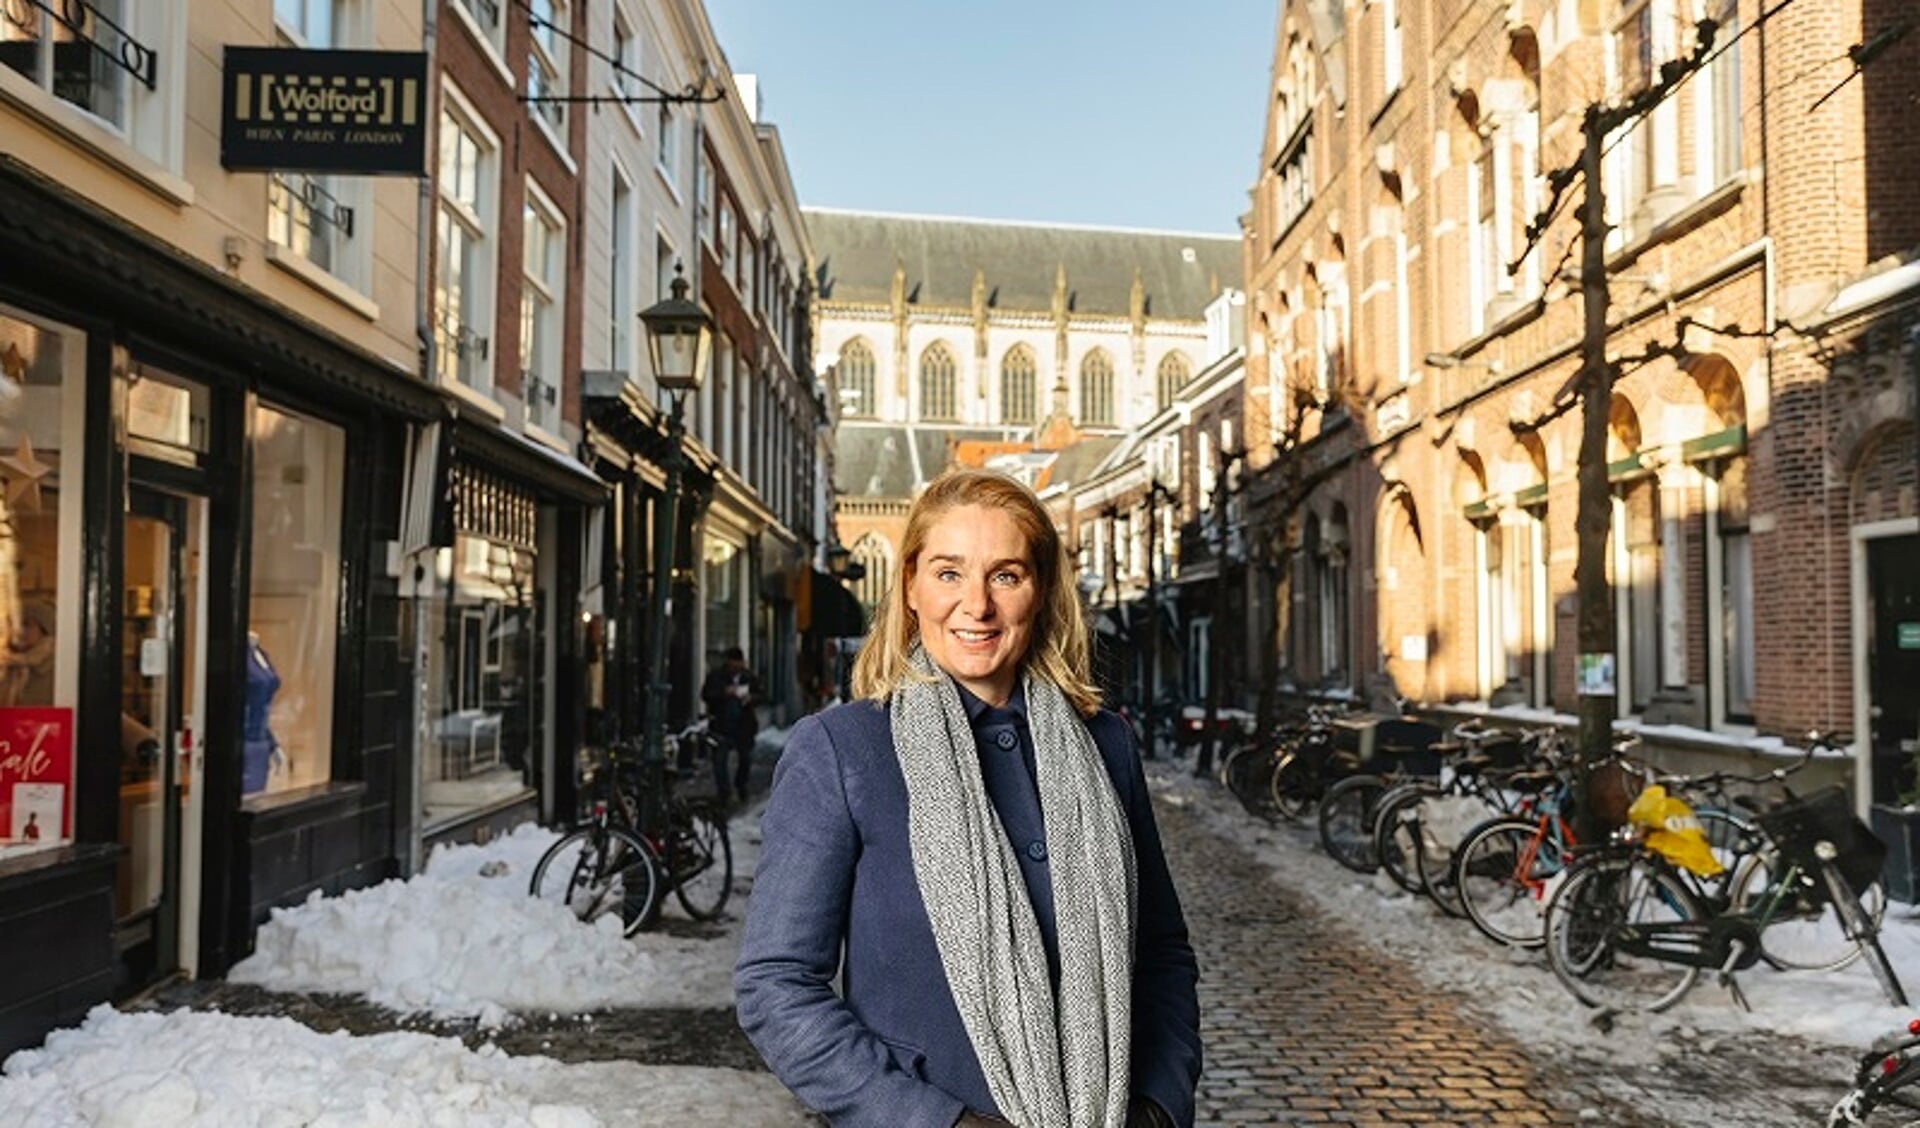 Simone Lunstroo bedacht het platform HaarlemseWinkels.nl.